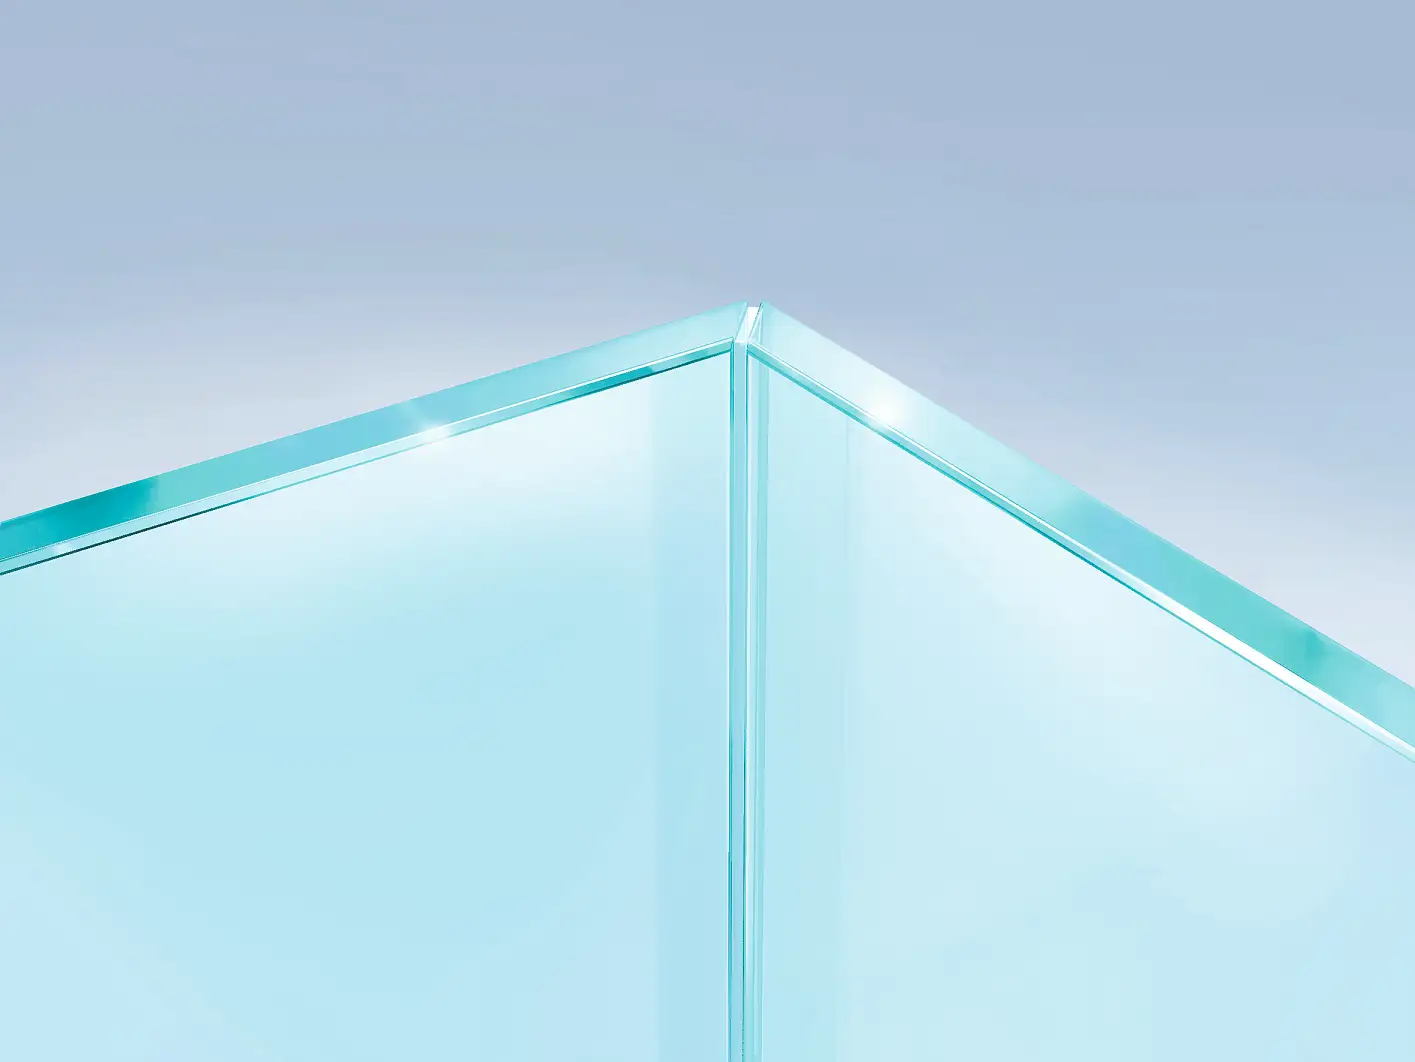 Görünmez ve optik olarak temiz köşe sağlamak amacıyla cam panellerin 45° açı ile bağlanması